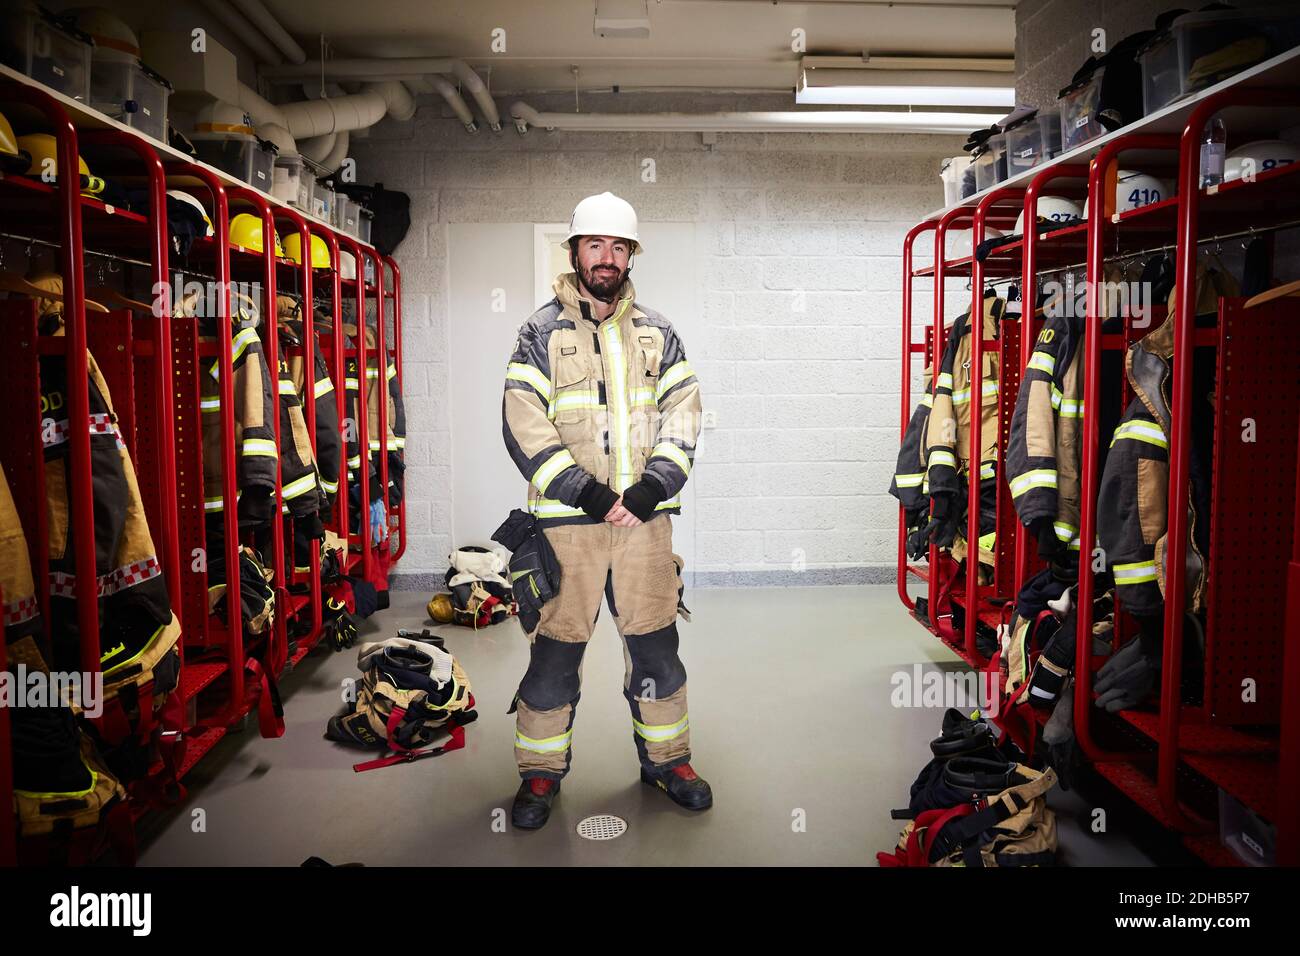 Longueur totale de pompier mâle debout dans le vestiaire à caserne de pompiers Banque D'Images